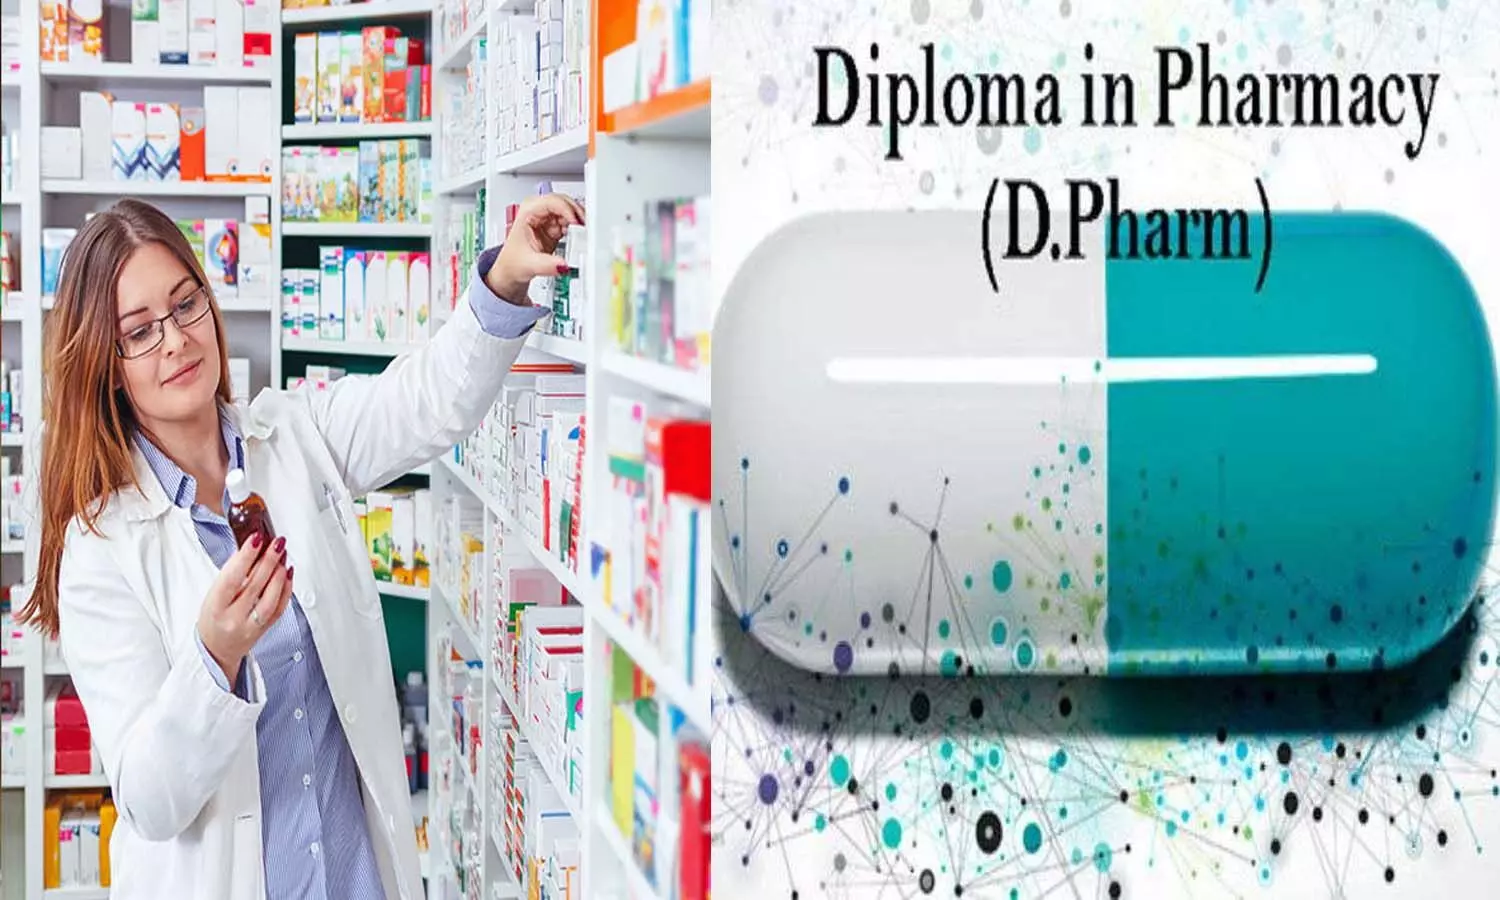 Diploma in Pharmacy:  छात्रों के लिए बड़ी ख़बर, अब पंजीकरण से पहले देने होंगे तीन पेपर, फार्मेसी प्रोफेशन के स्तर में आएगा सुधार